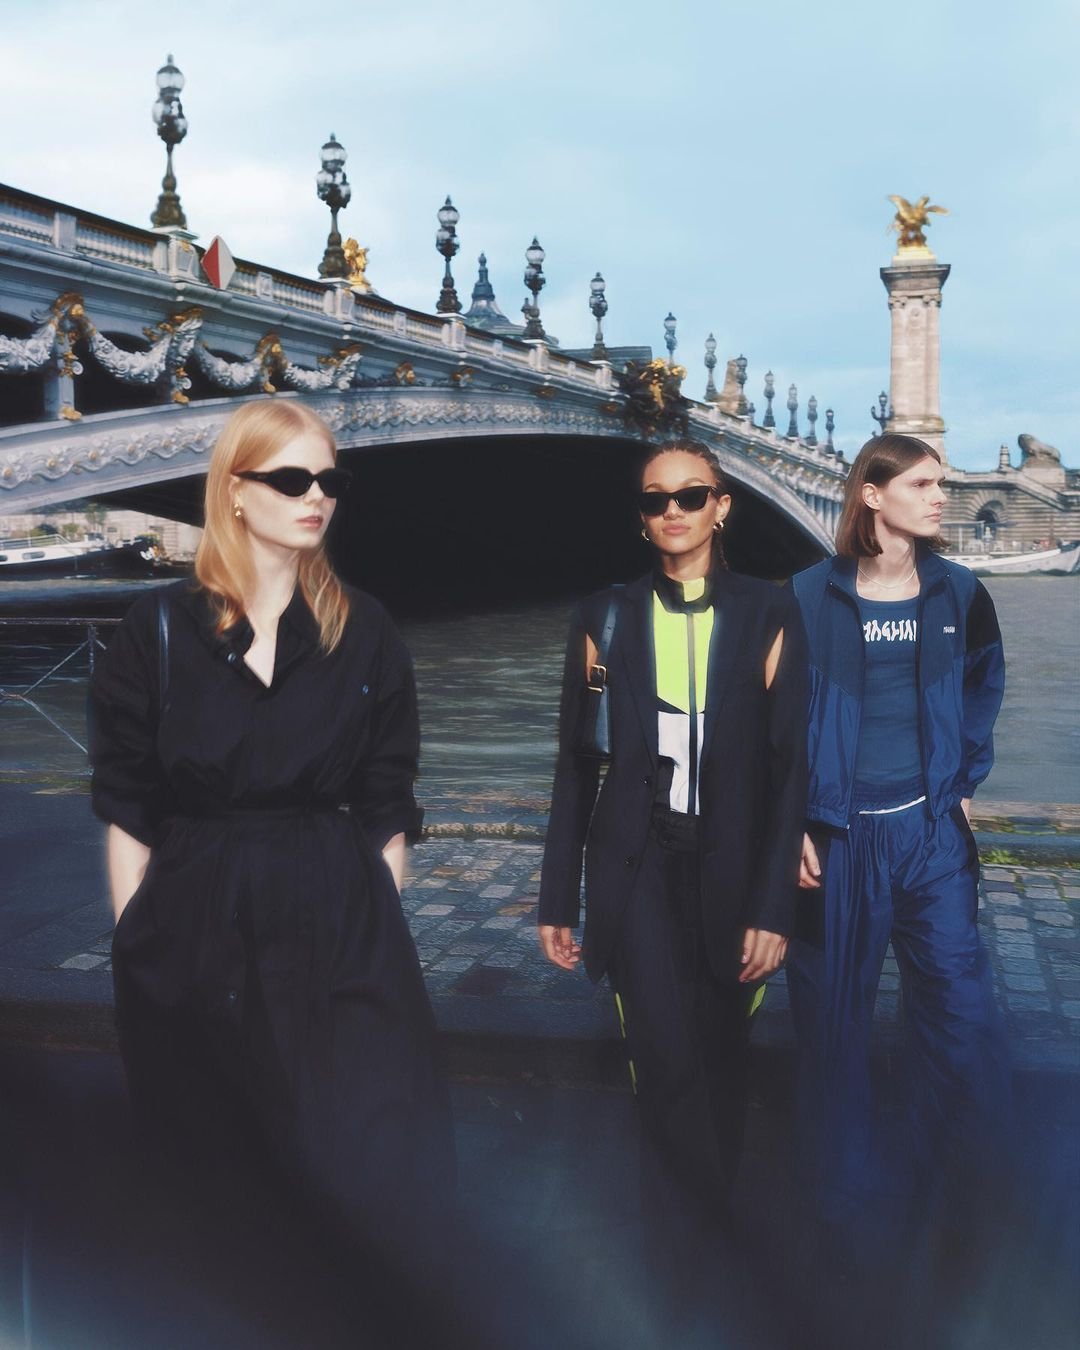 LVMH - LVMH - conglomerados de moda - Verão - Paris - https://stealthelook.com.br